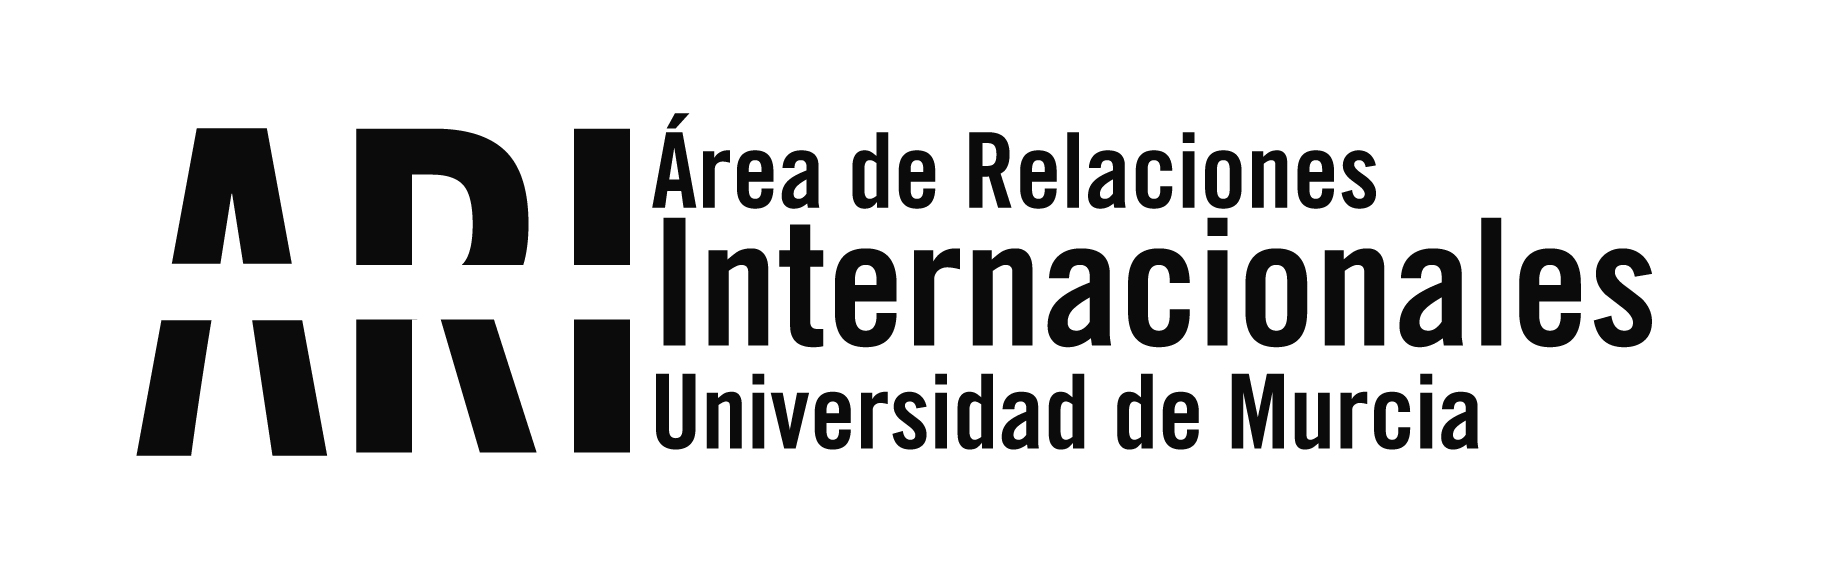 Un proyecto europeo liderado por la Universidad de Murcia "sacará del armario" a los invisibles de la historia - Área de Relaciones Internacionales